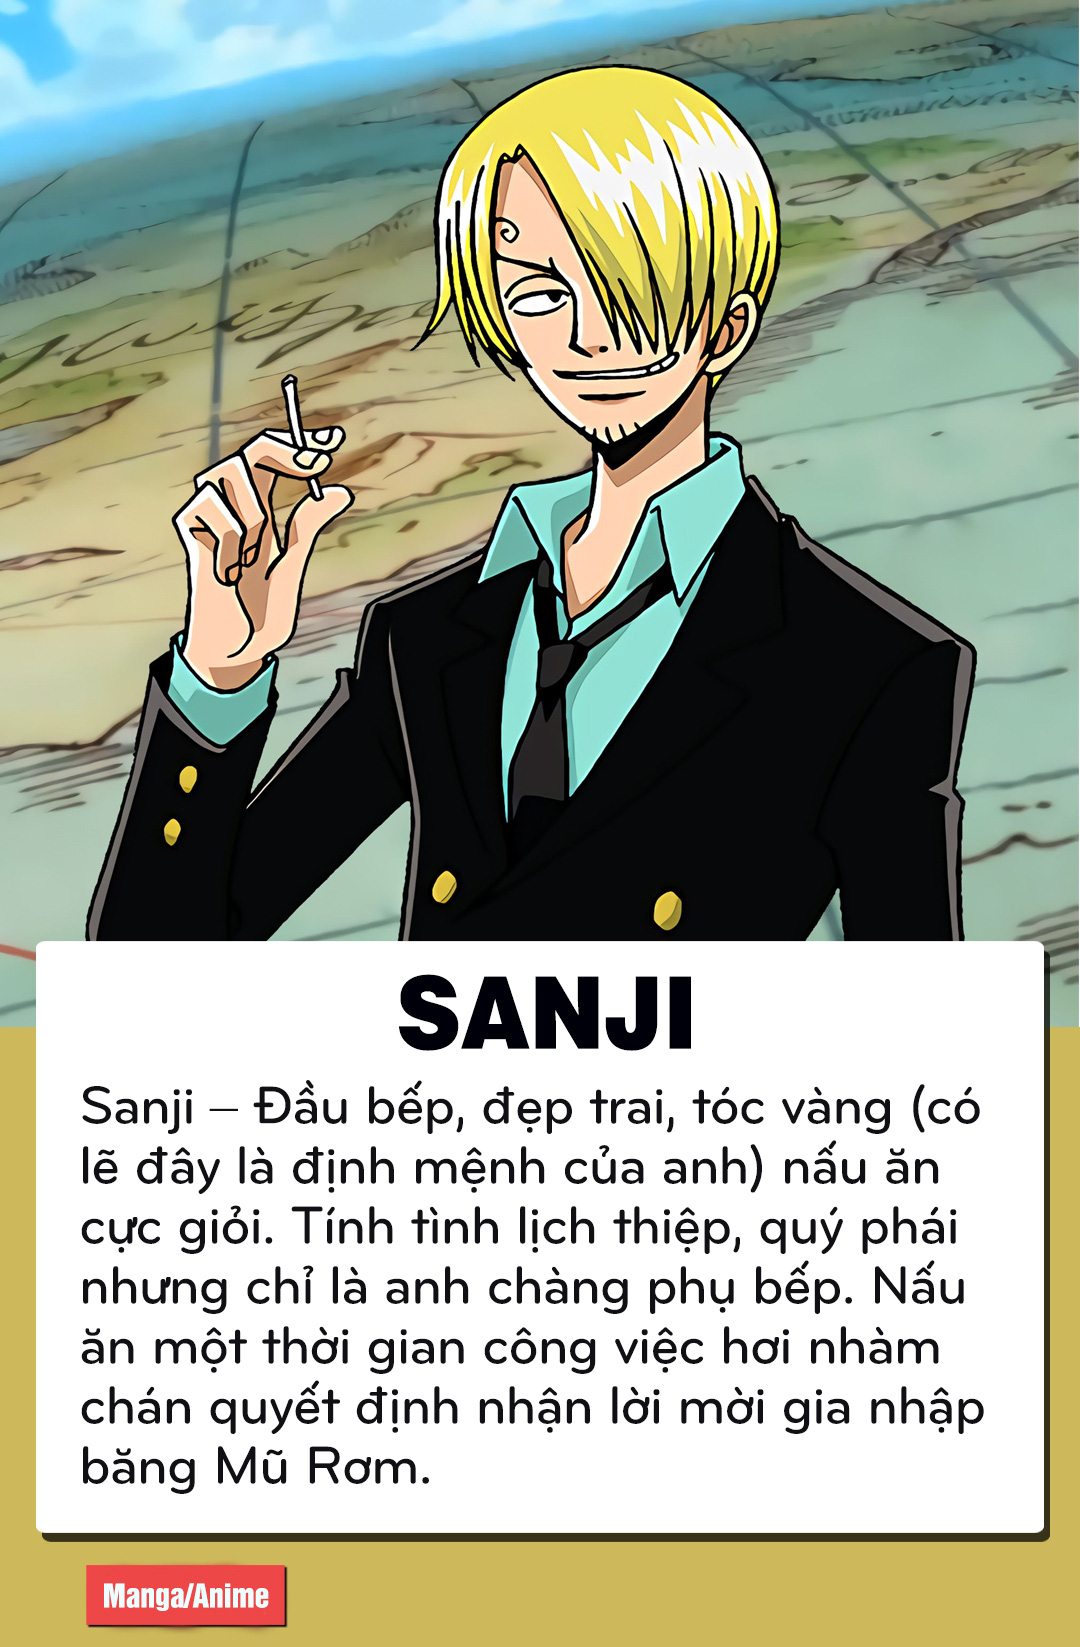 One Piece: Sanji – Zoro và câu chuyện của 2 soái ca băng Mũ Rơm nhưng số phận trái ngược - Ảnh 1.